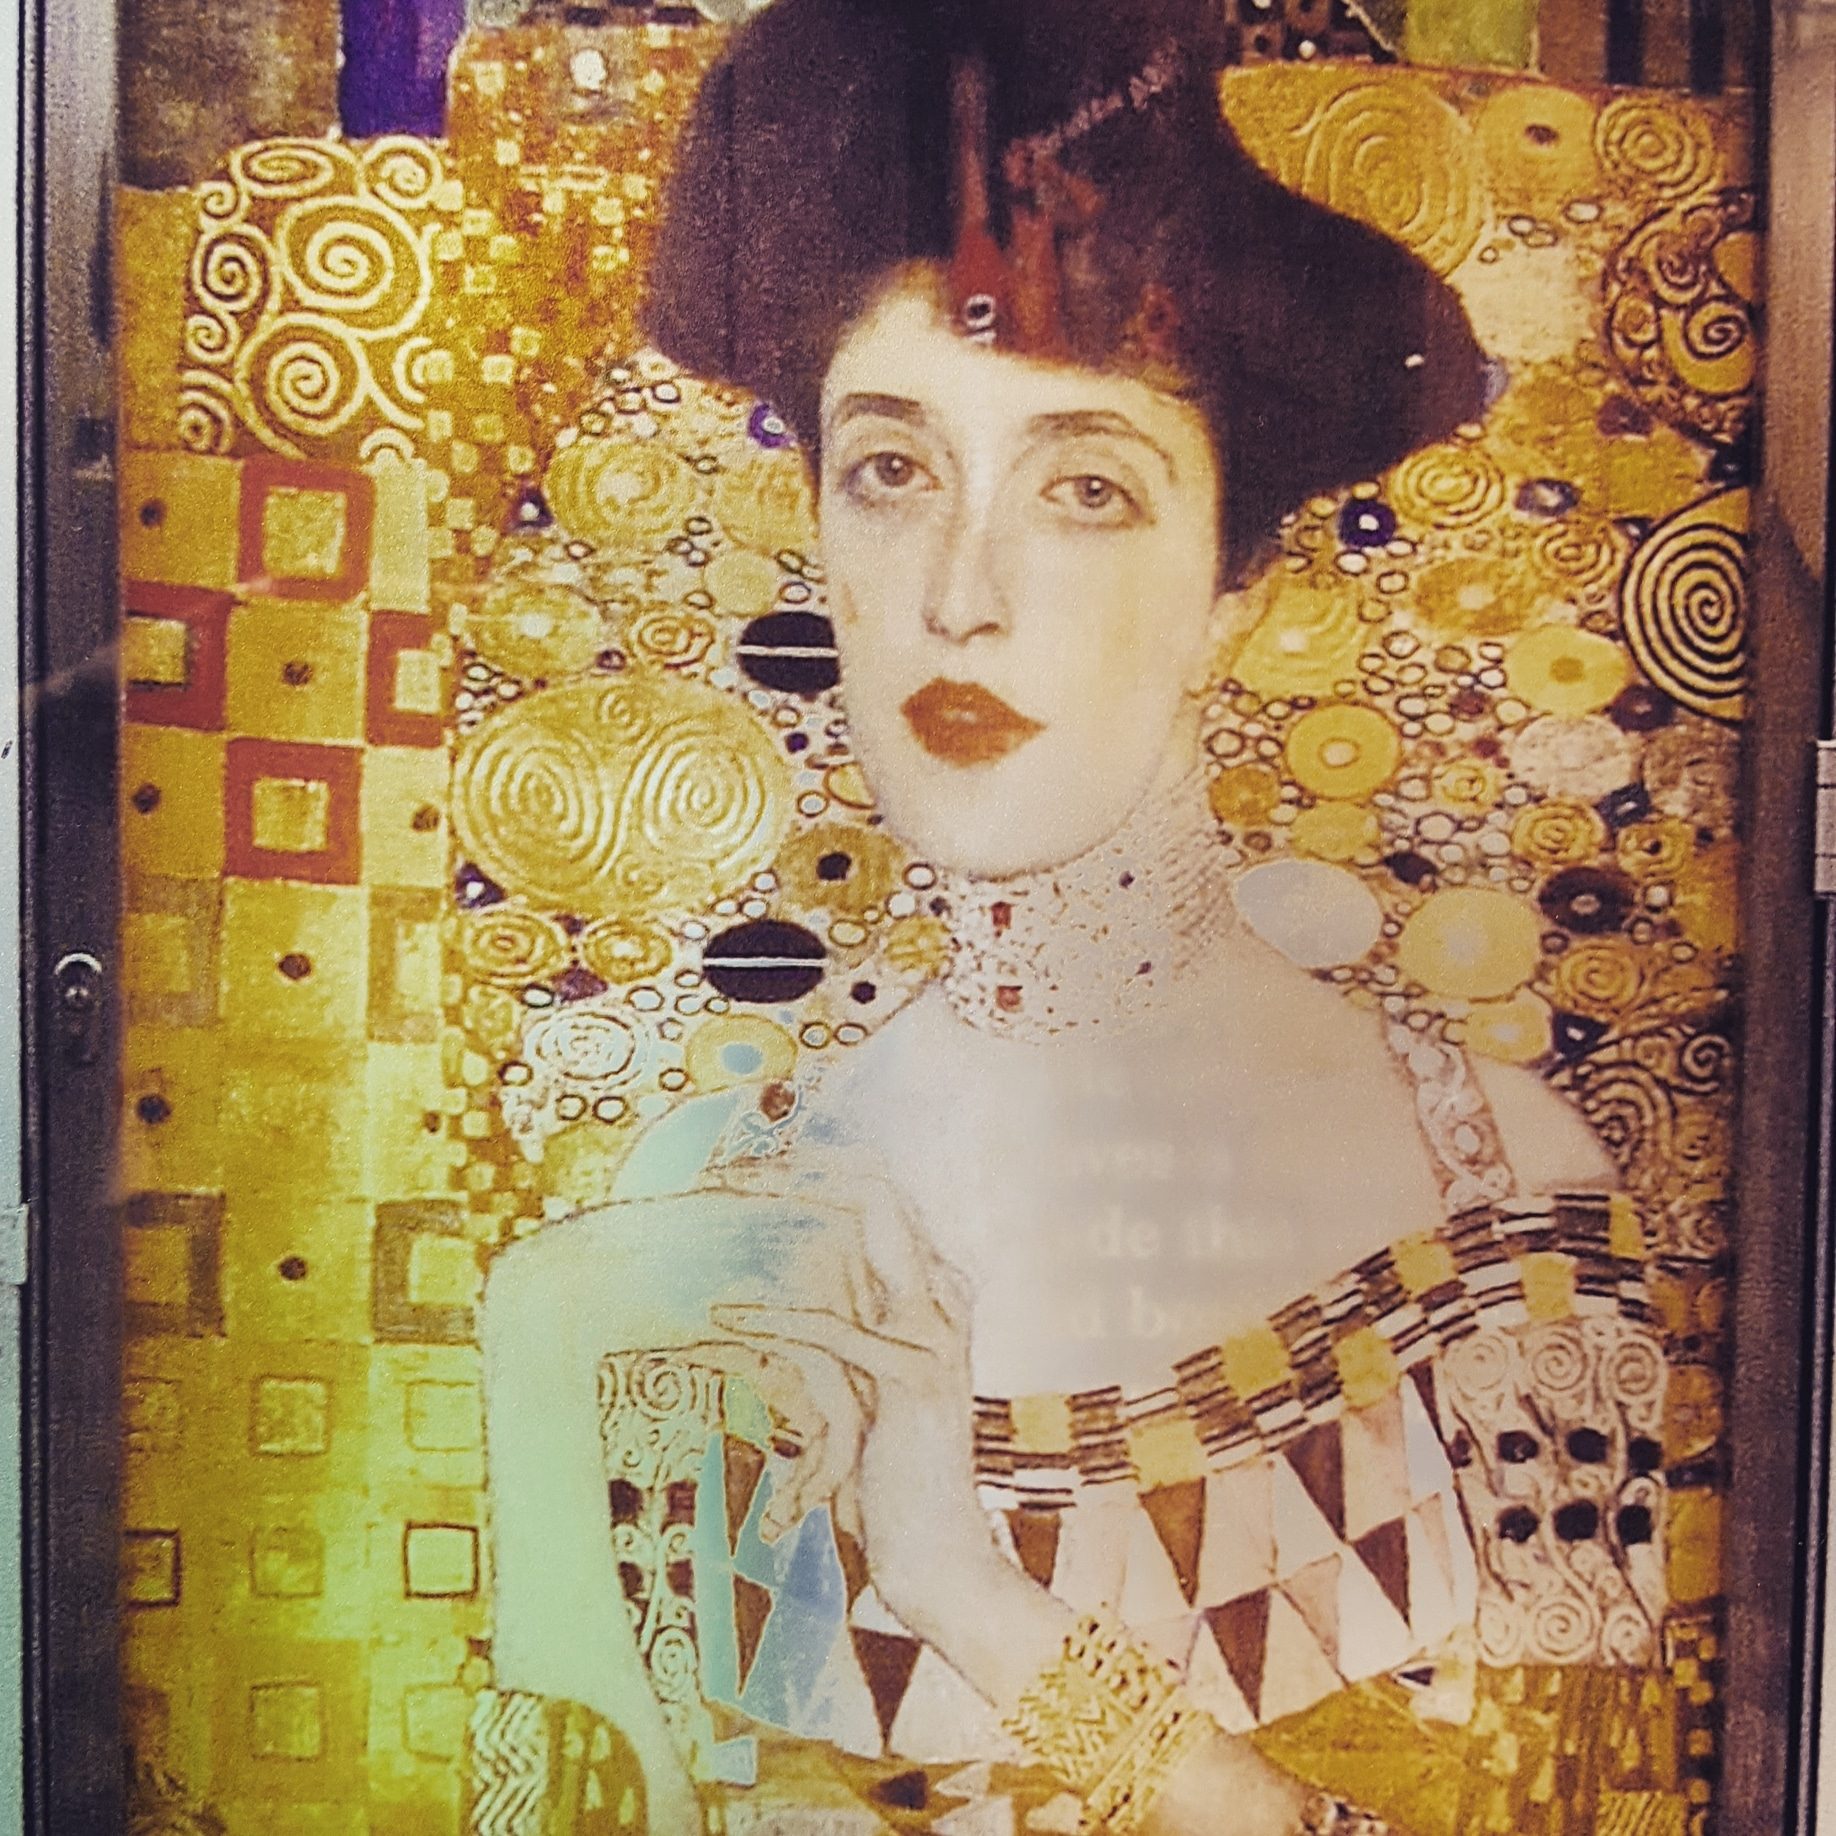  De Vienne 1900 au MAK à la Villa Klimt/aufildeslieux.fr/ Portrait d'Adèle Bloch ©K.HIBBS